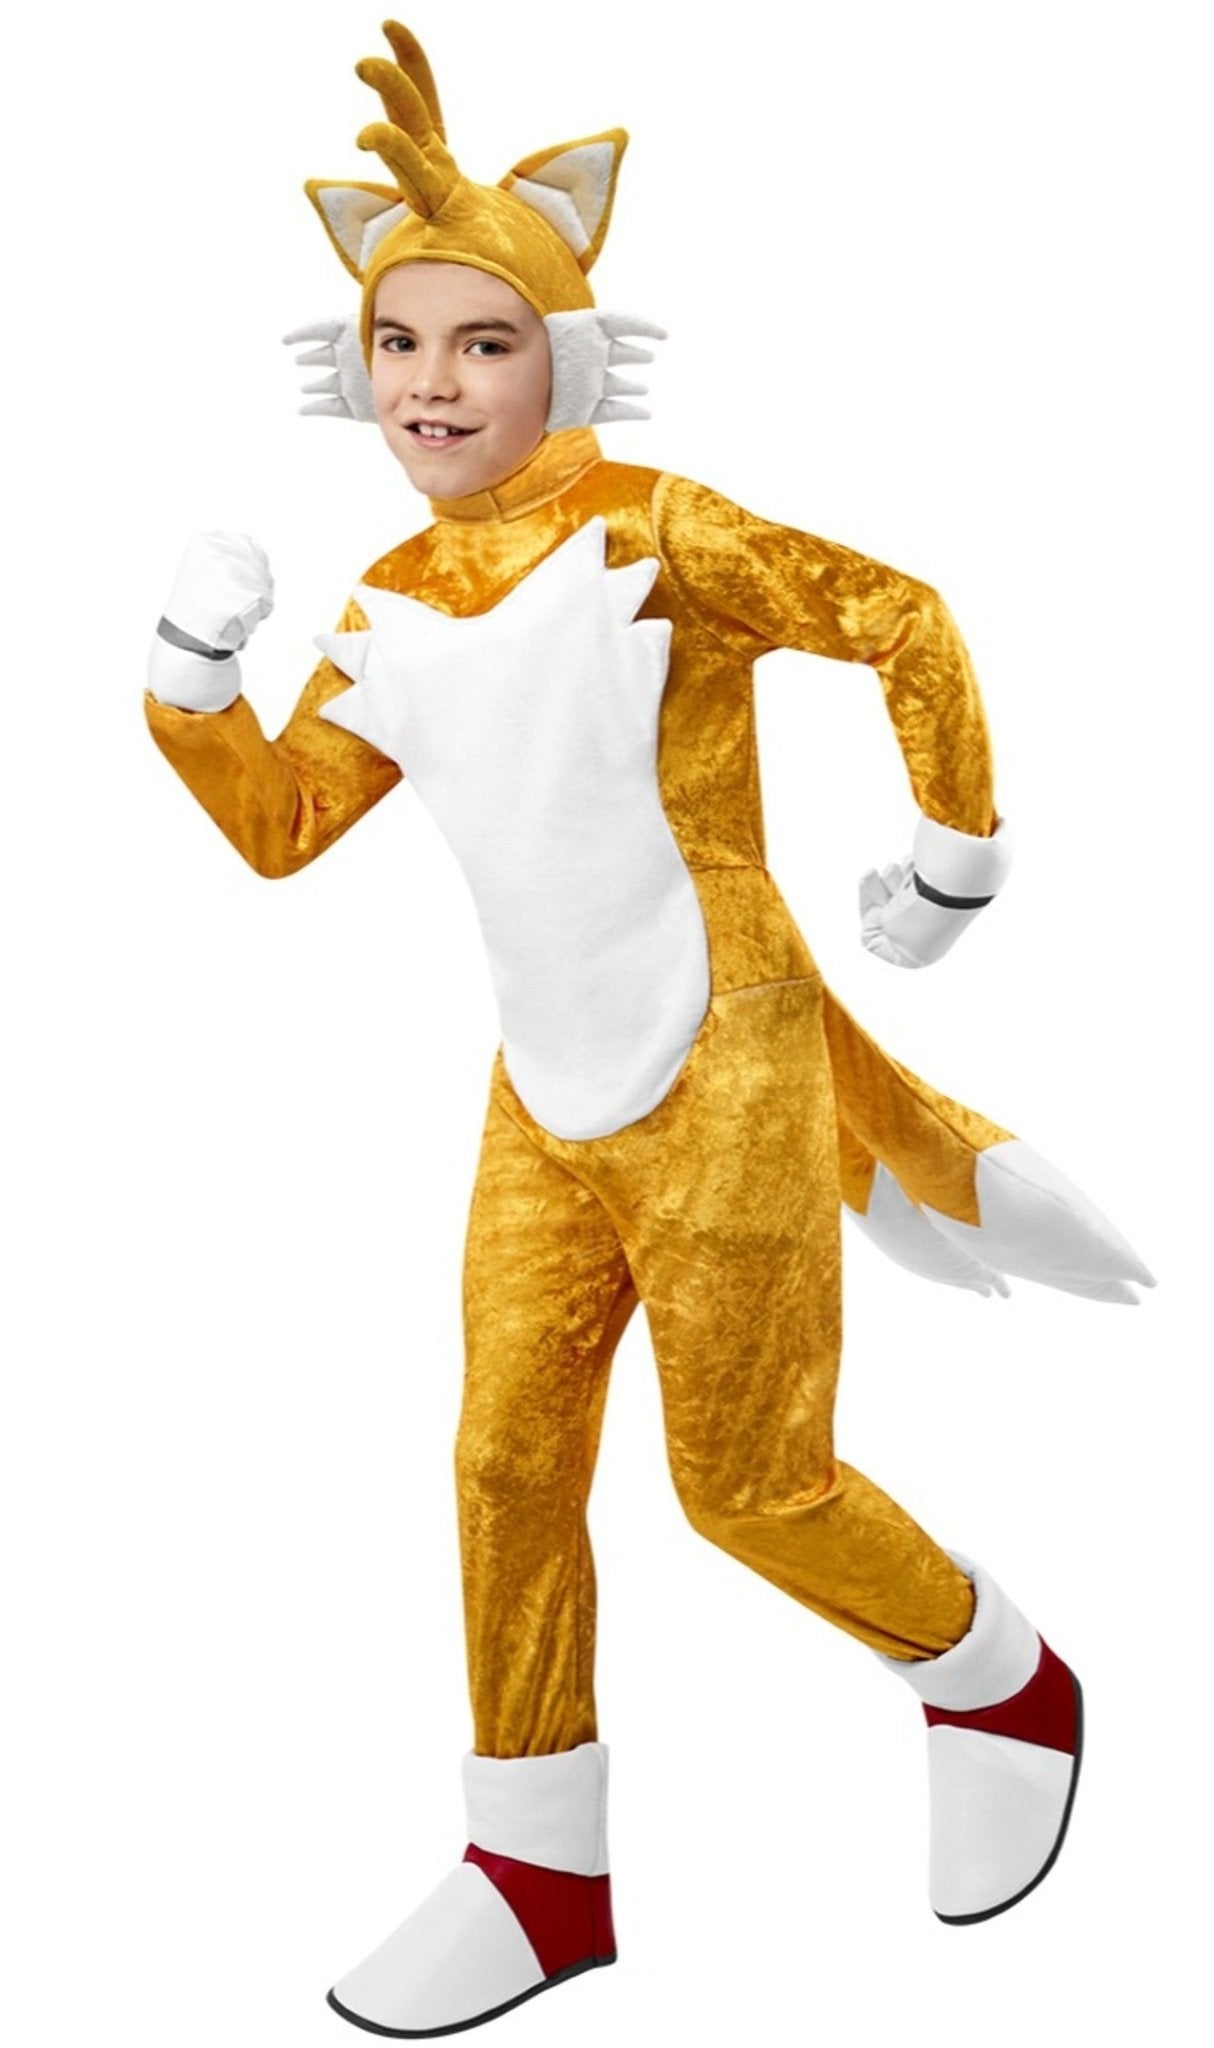 Disfraz de Sonic The Hedgehog para niños y niñas, personaje de